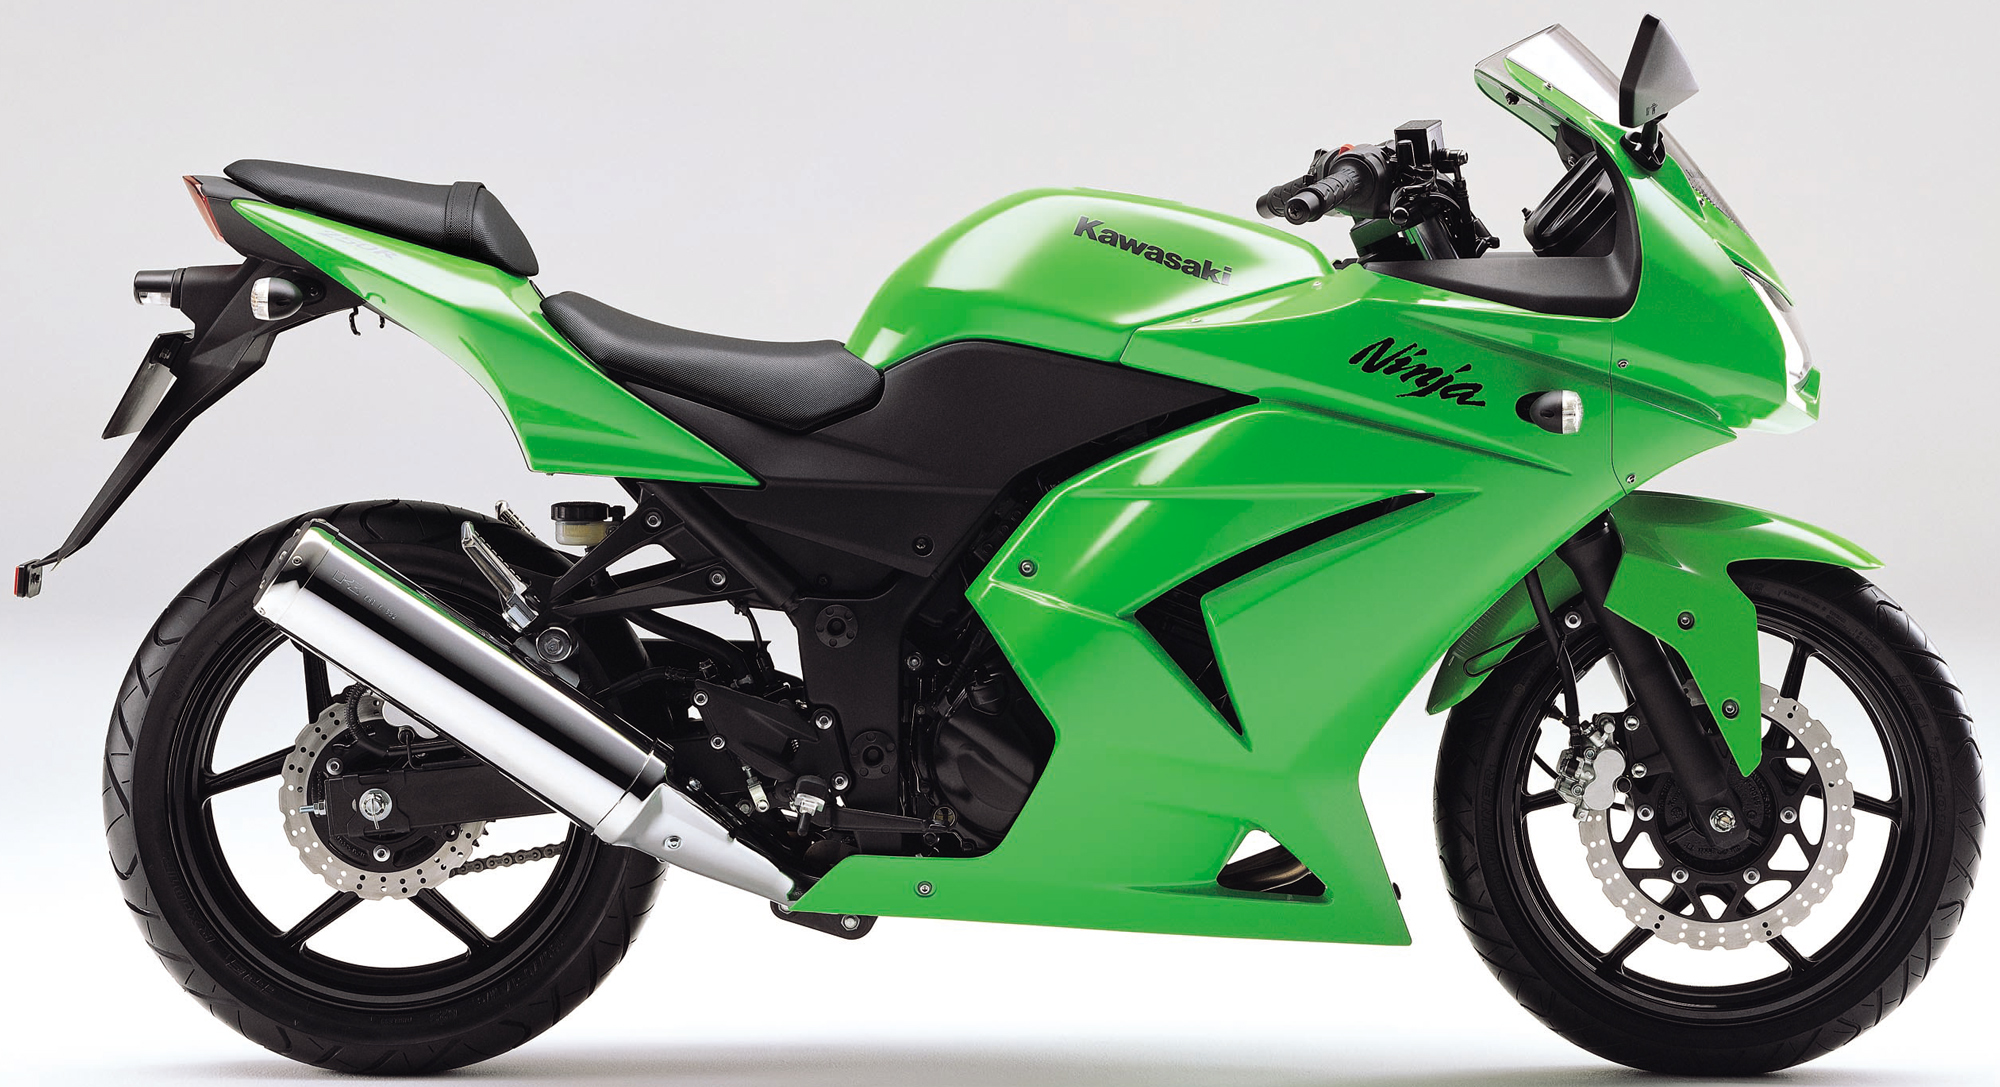 元祖250ccフルカウルスポーツ Ninja250r 全年式の全カラーが大集合 バイクニュース タンデムスタイル